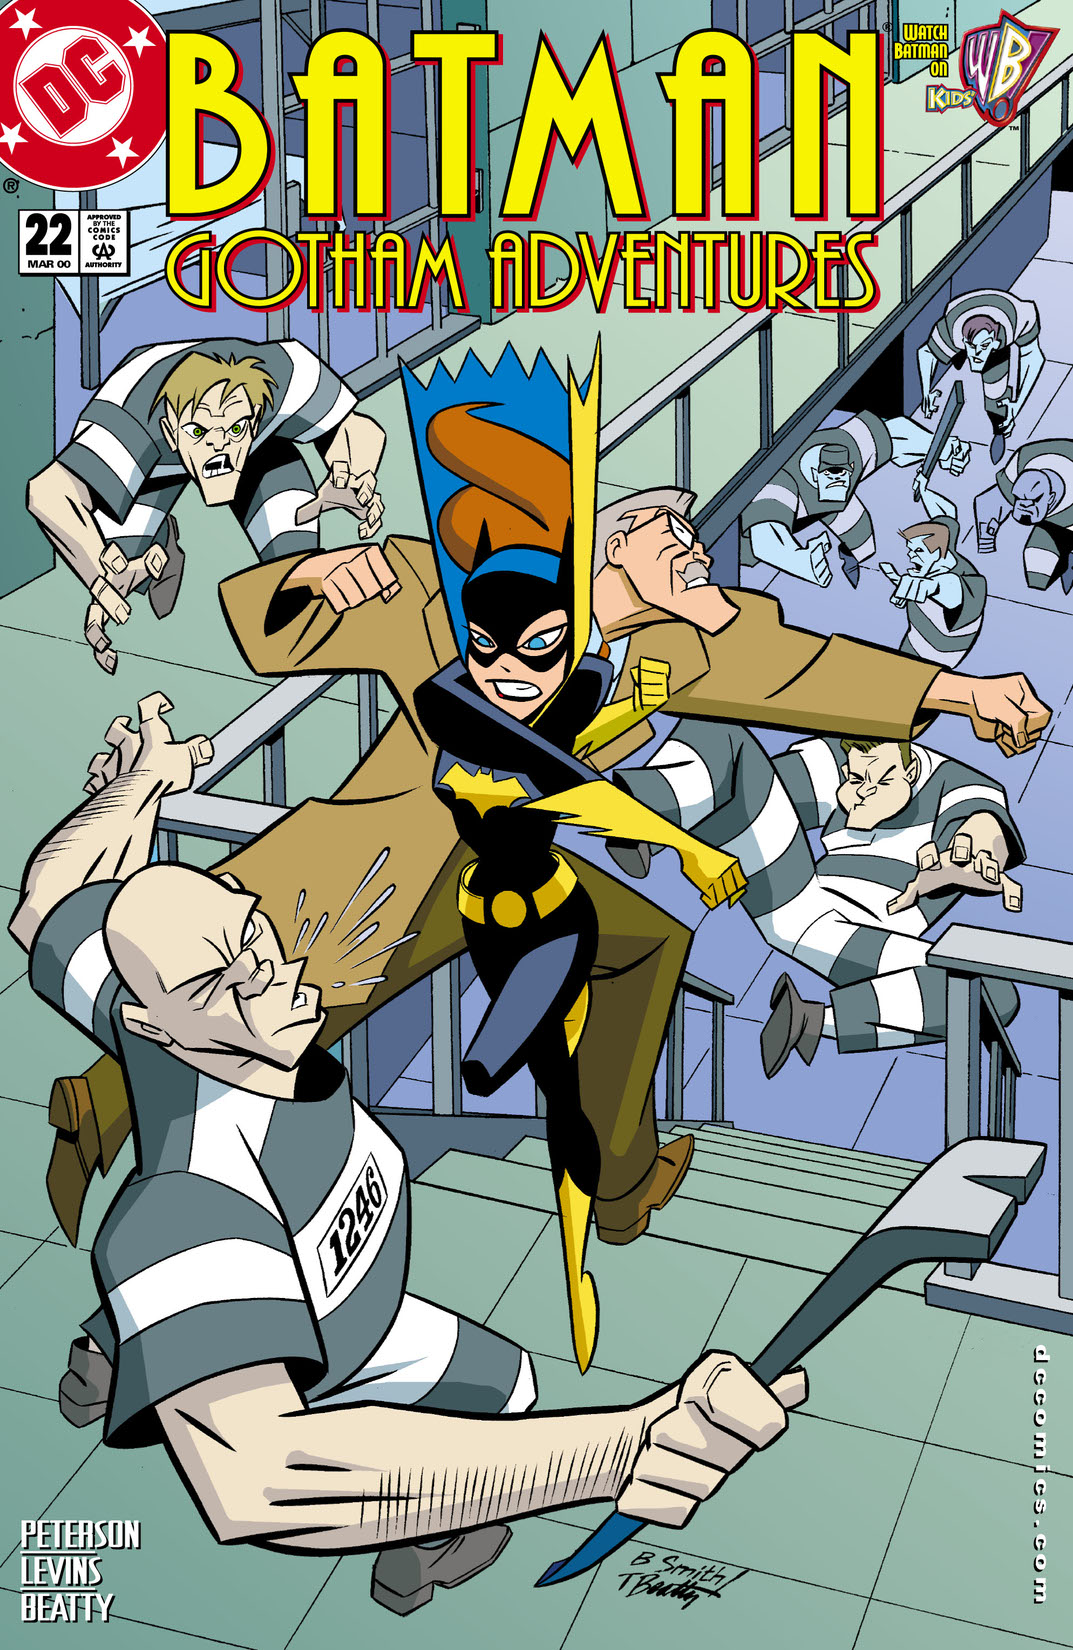 Batman: Gotham Adventures #22 preview images